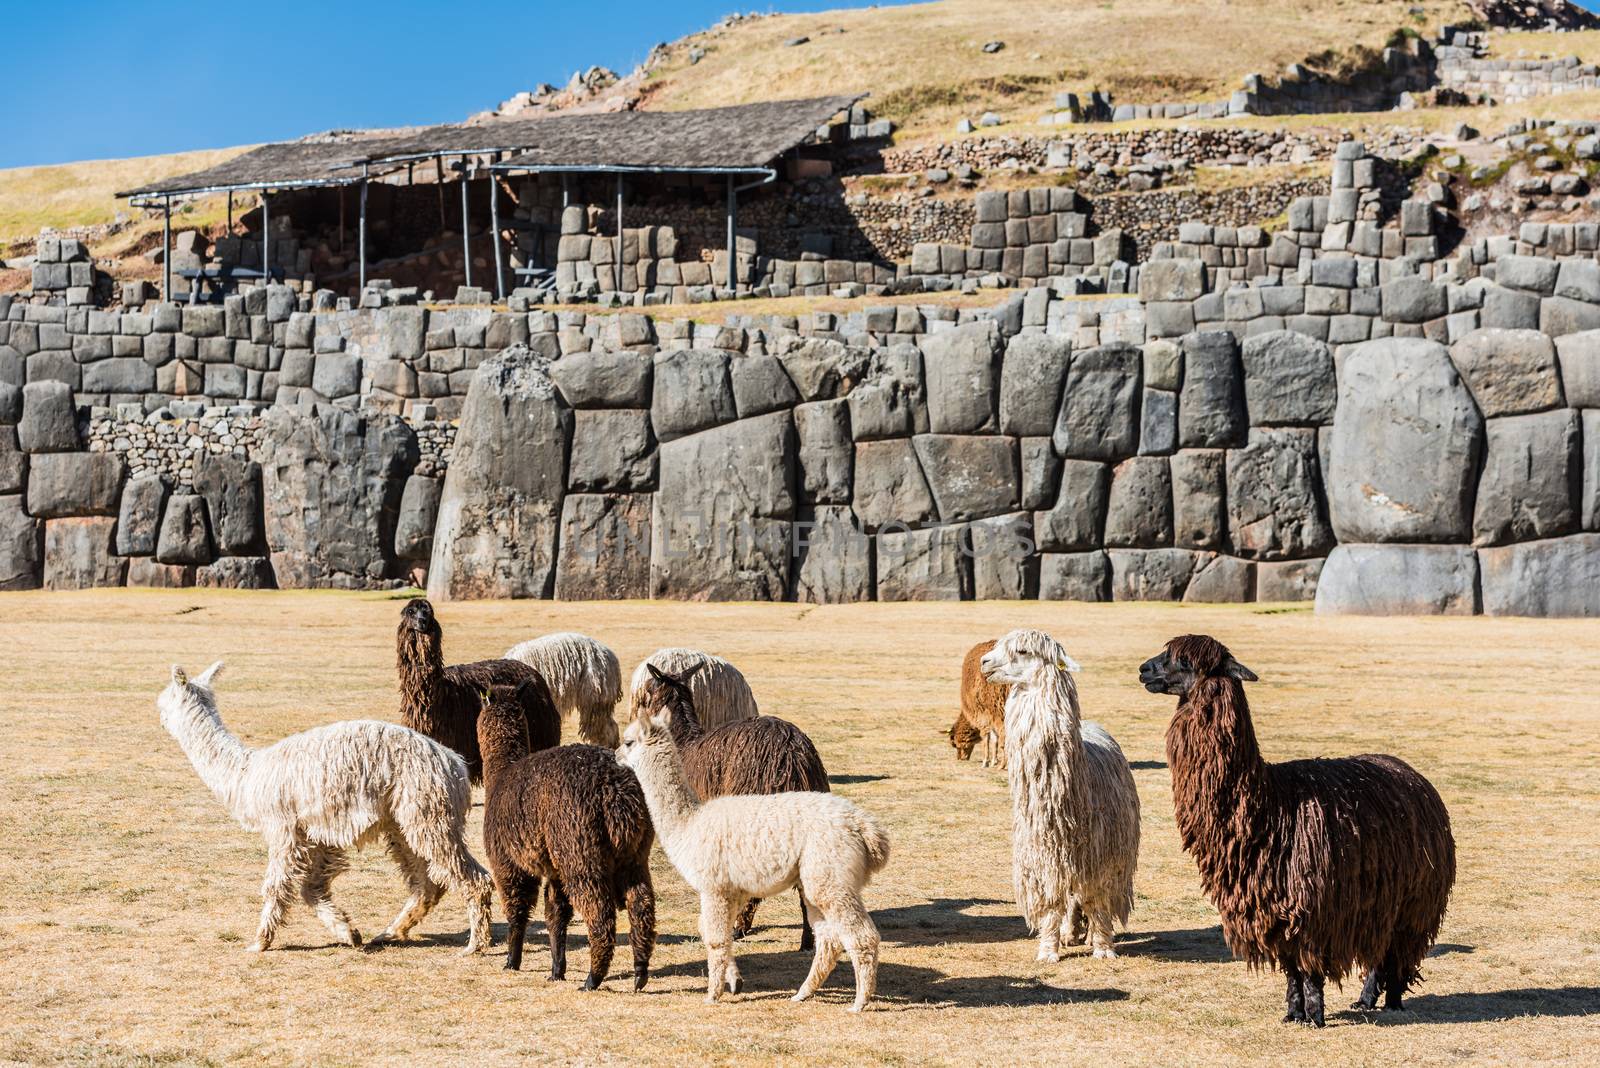 Alpacas  Sacsayhuaman ruins peruvian Andes  Cuzco Peru by PIXSTILL